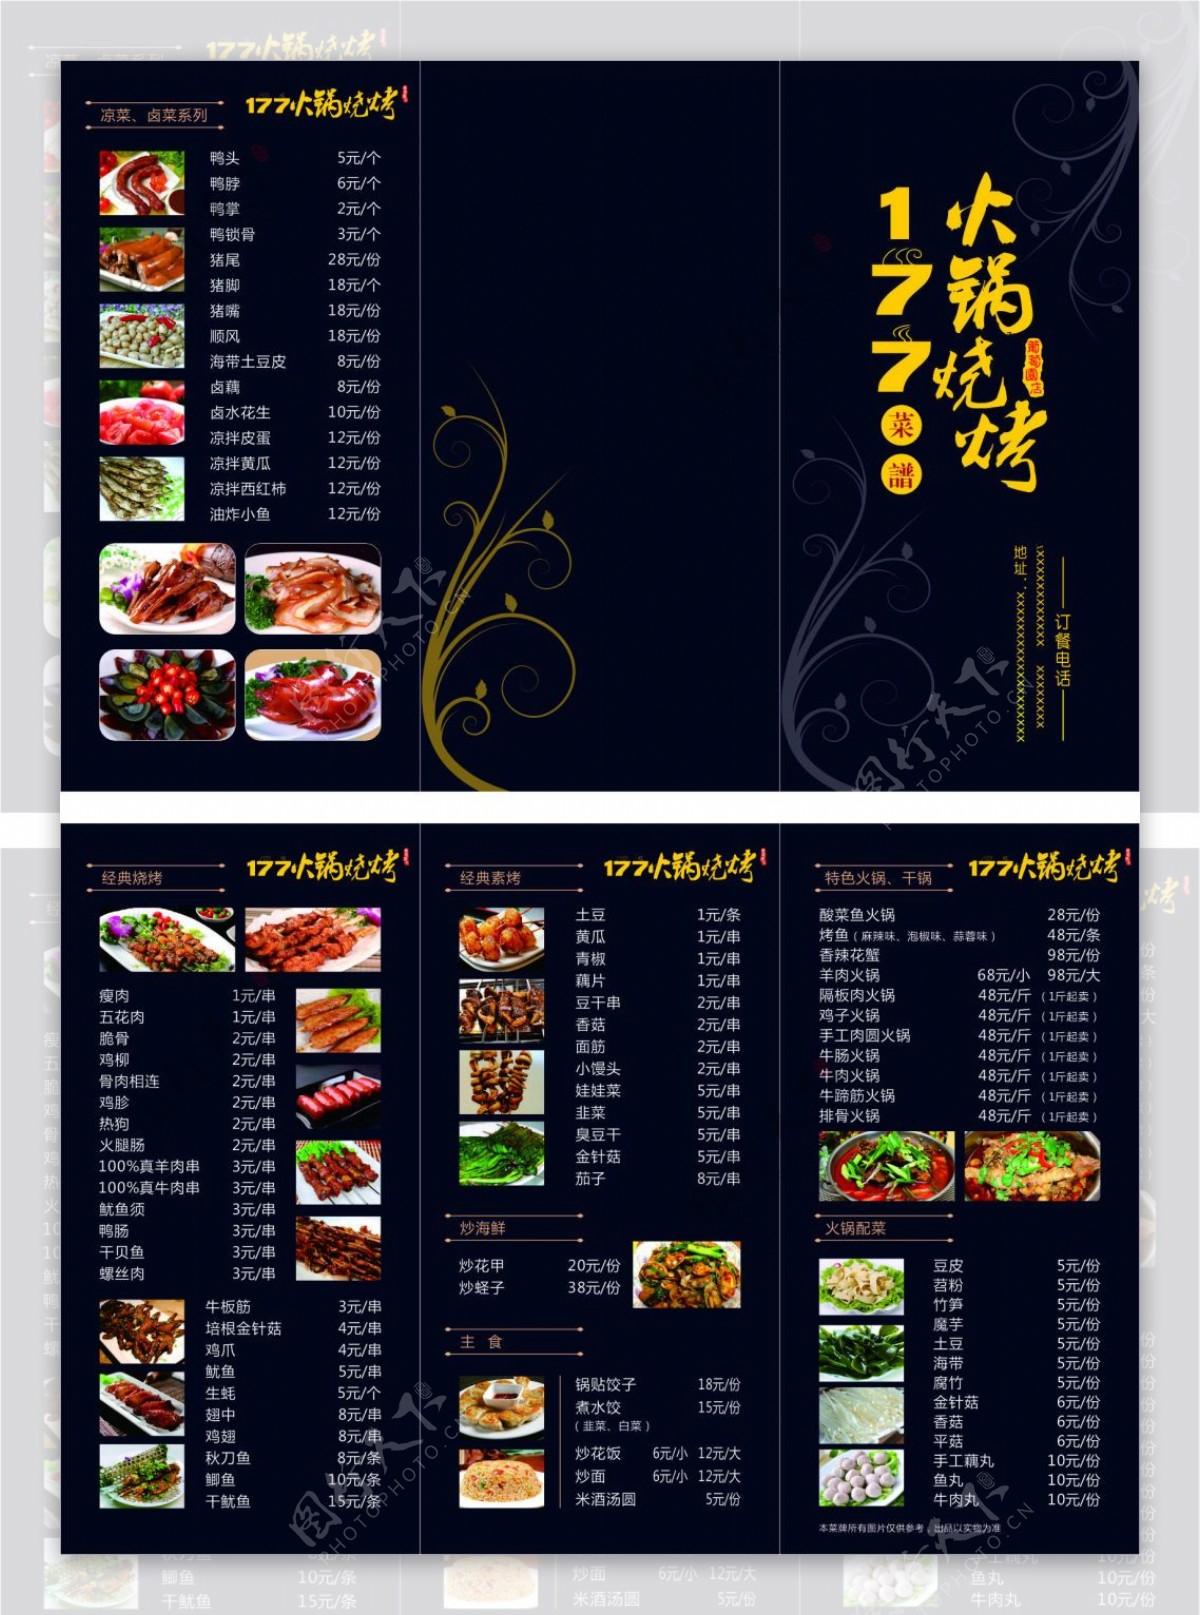 火锅烧烤菜单三折页设计